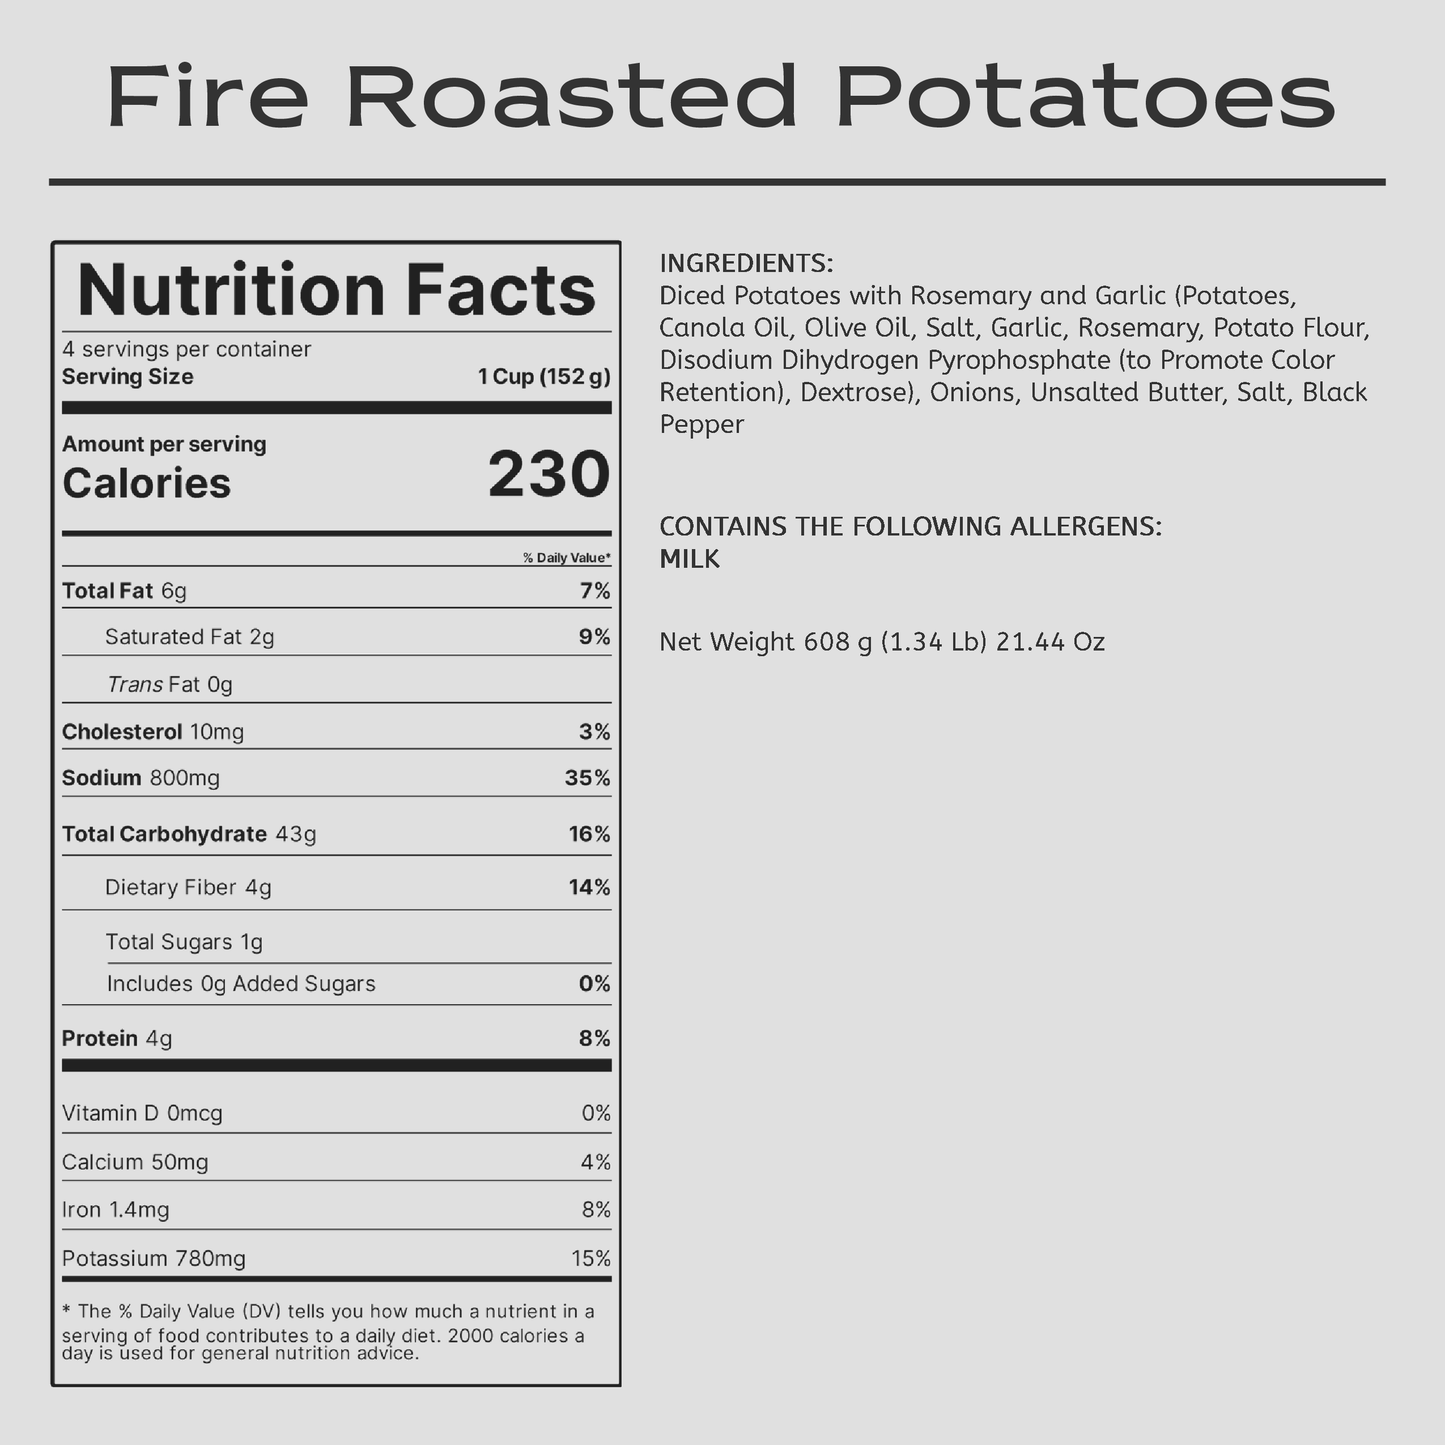 Fire Roasted Potatoes